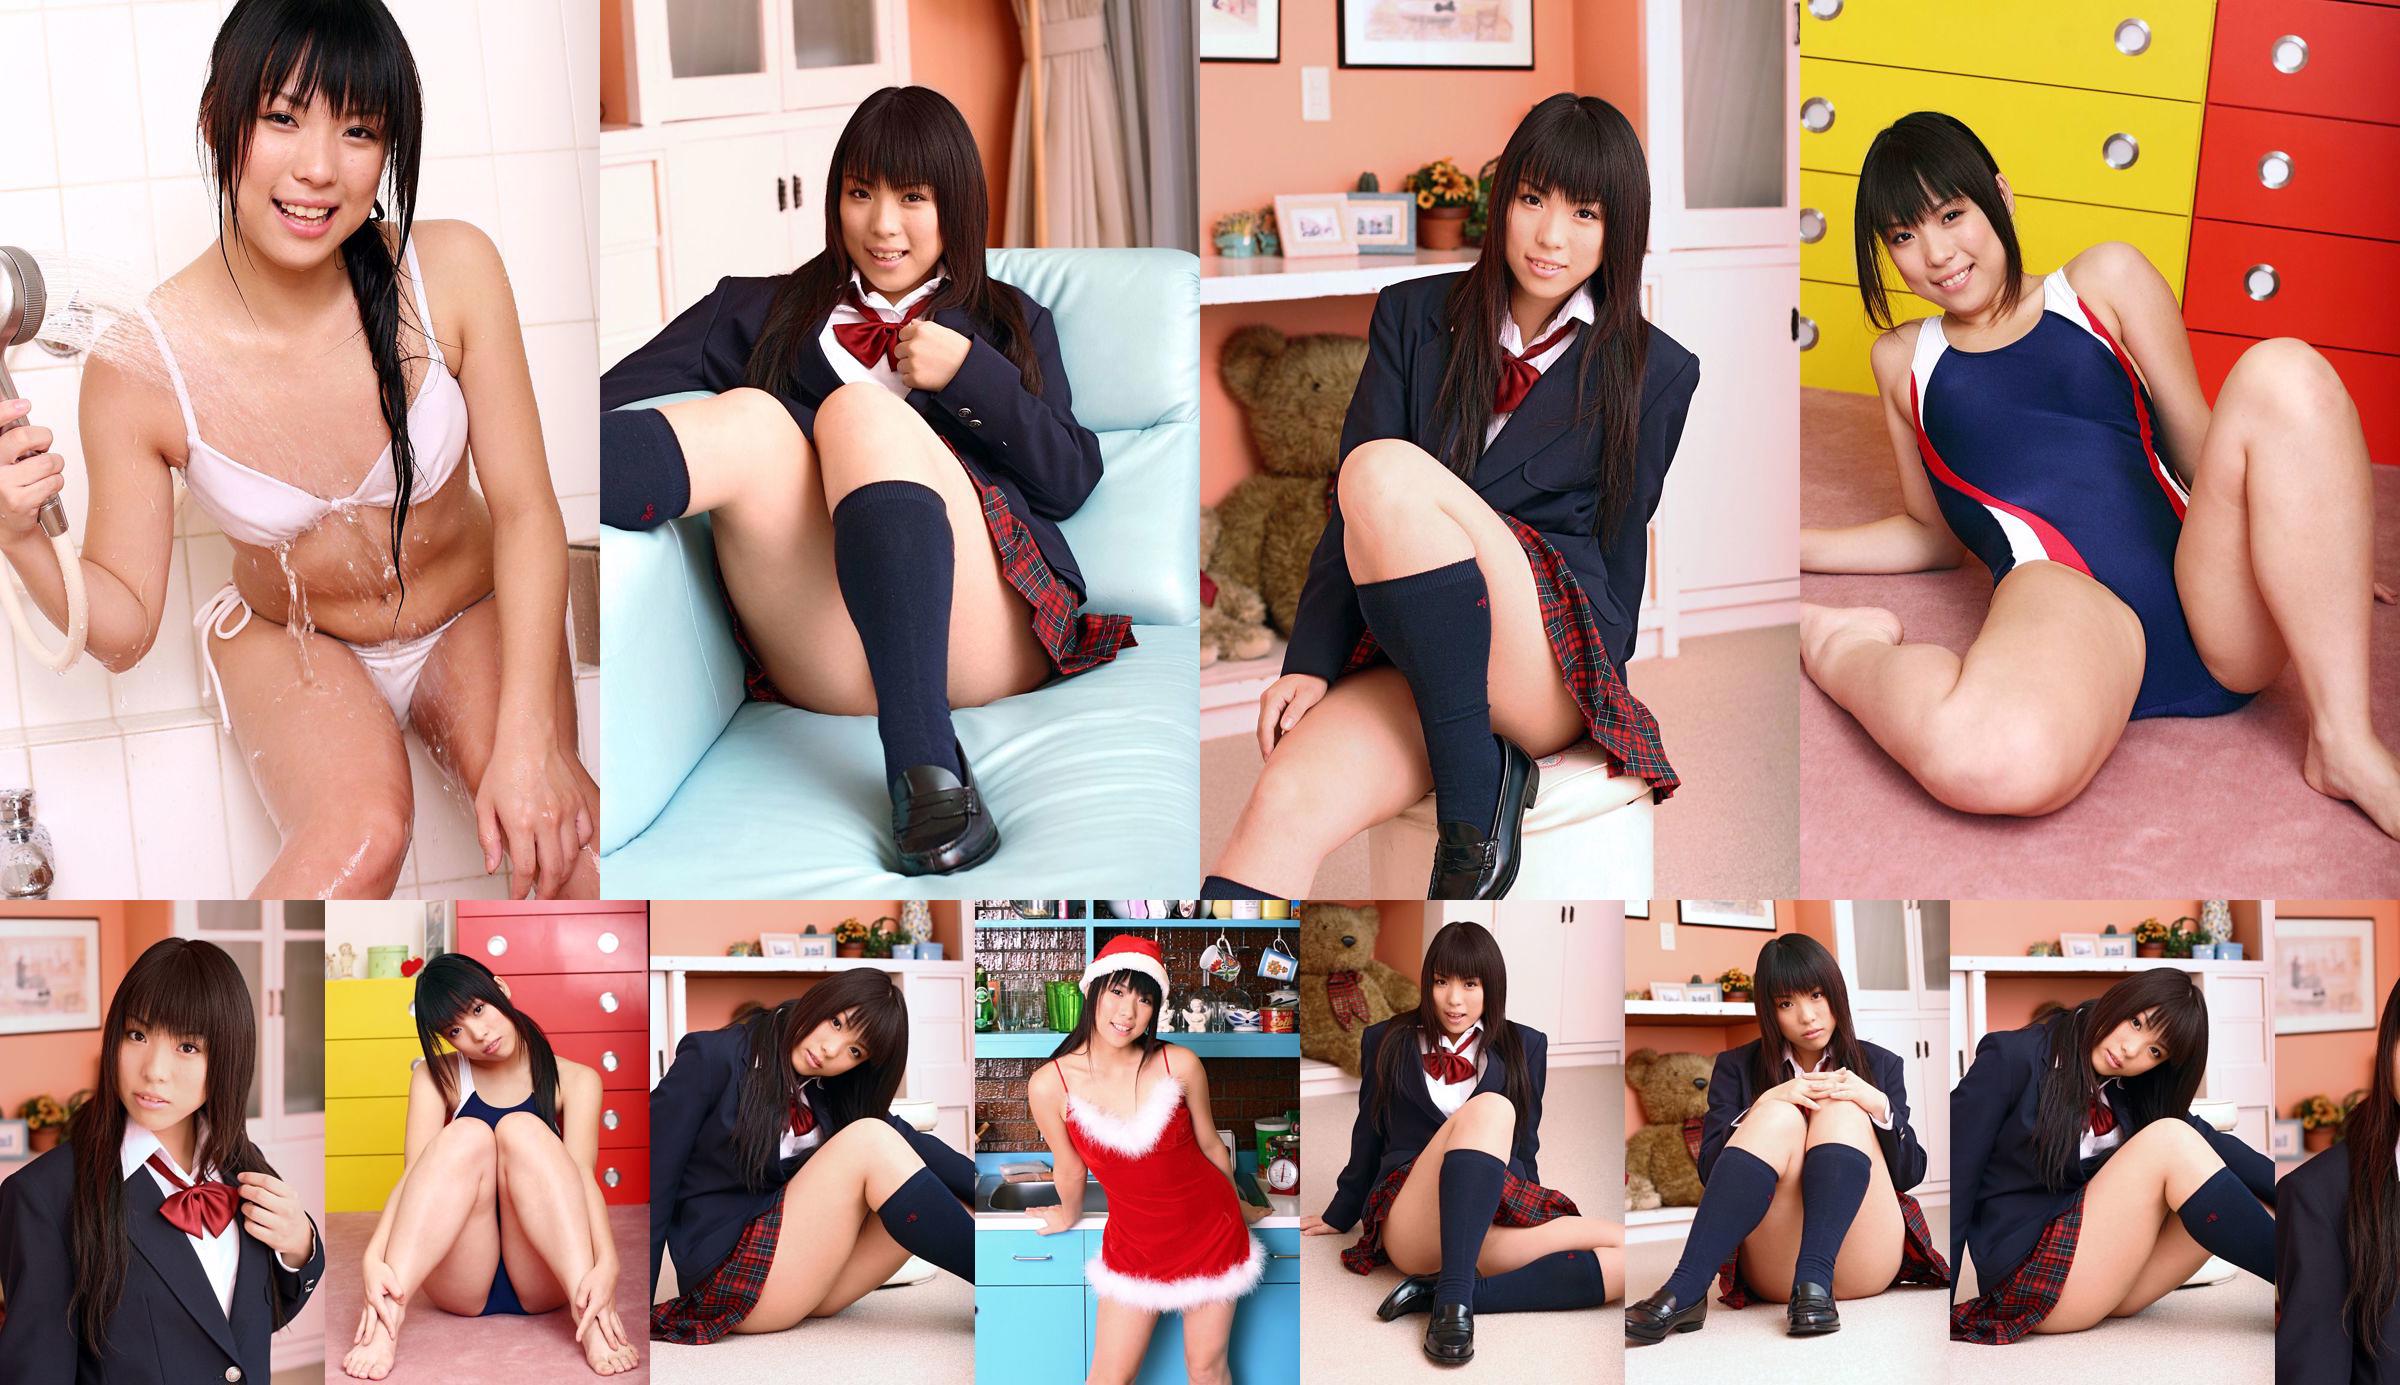 [DGC] Nr. 375 Chiharu Shirakawa Uniform schönes Mädchen Himmel No.a65c60 Seite 1